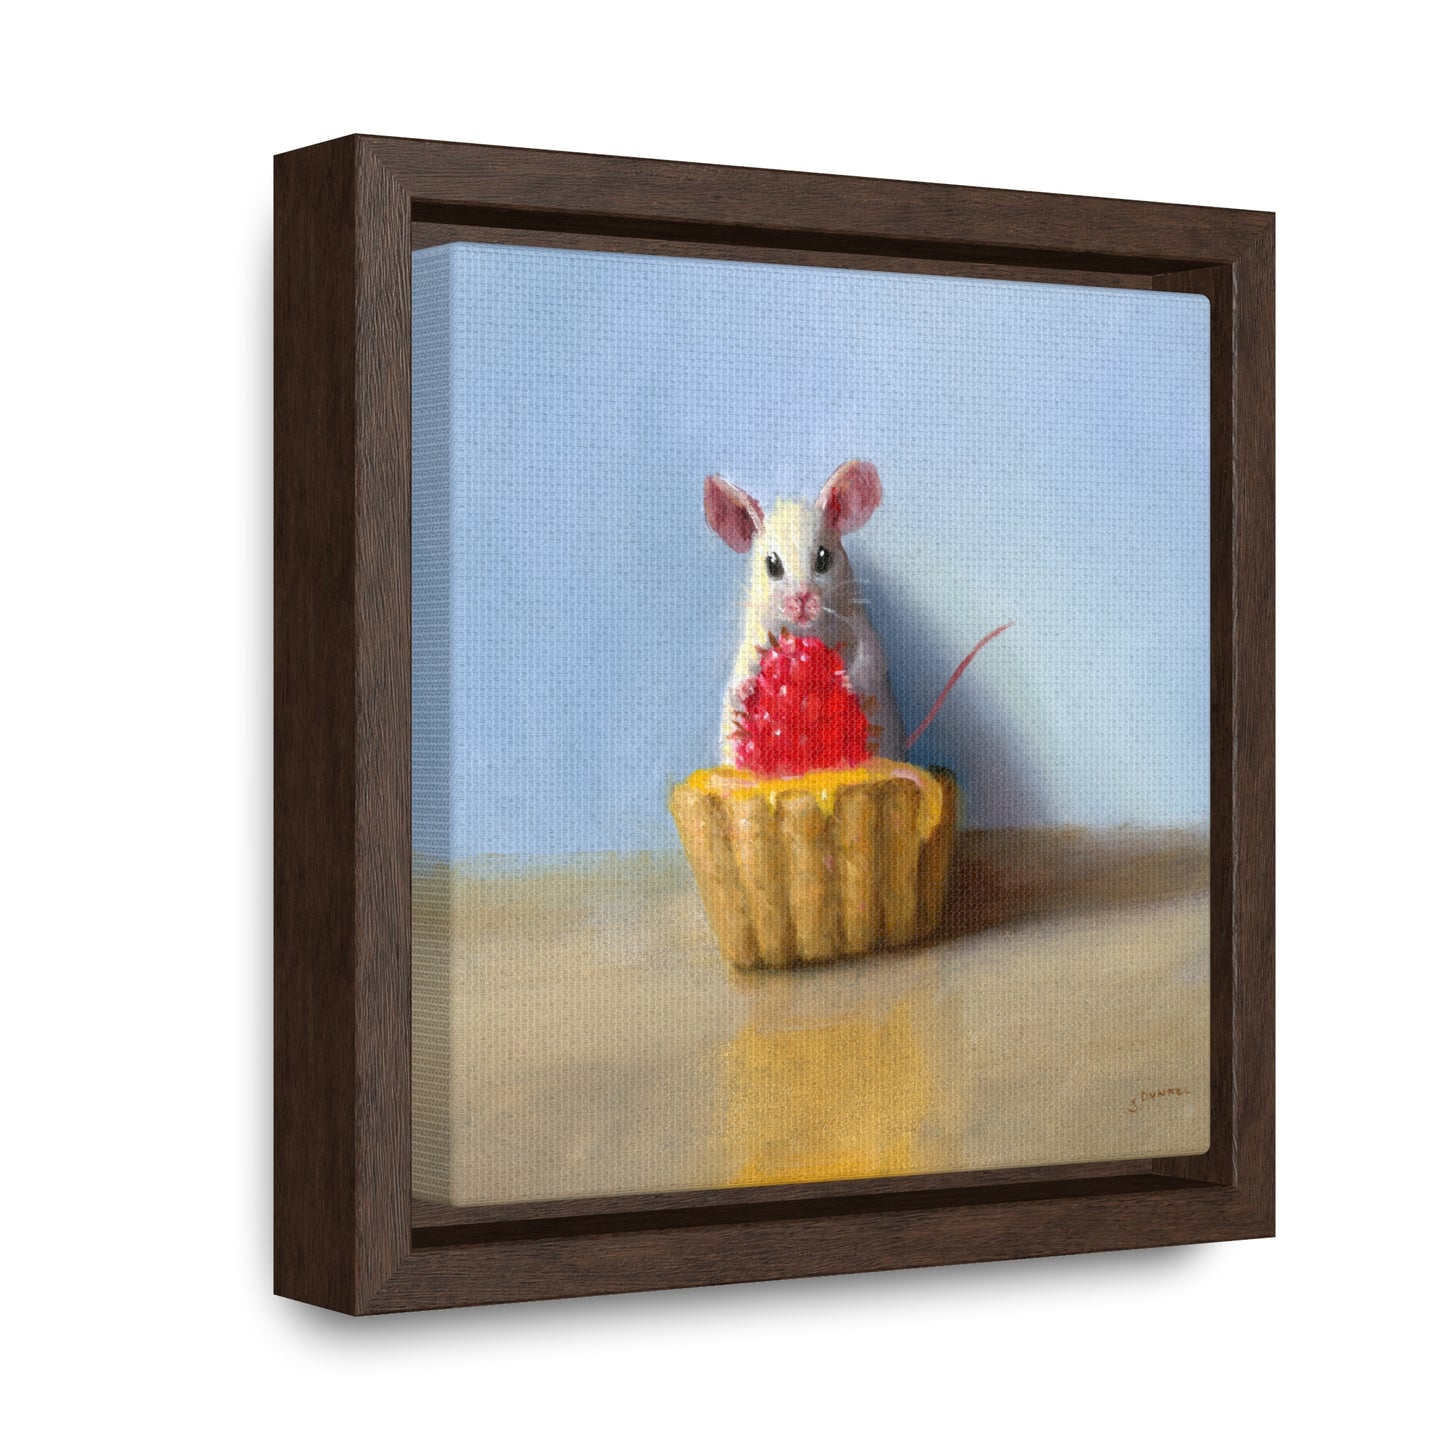 Stuart Dunkel: "Raspberry Tart" - Framed Canvas Reproduction